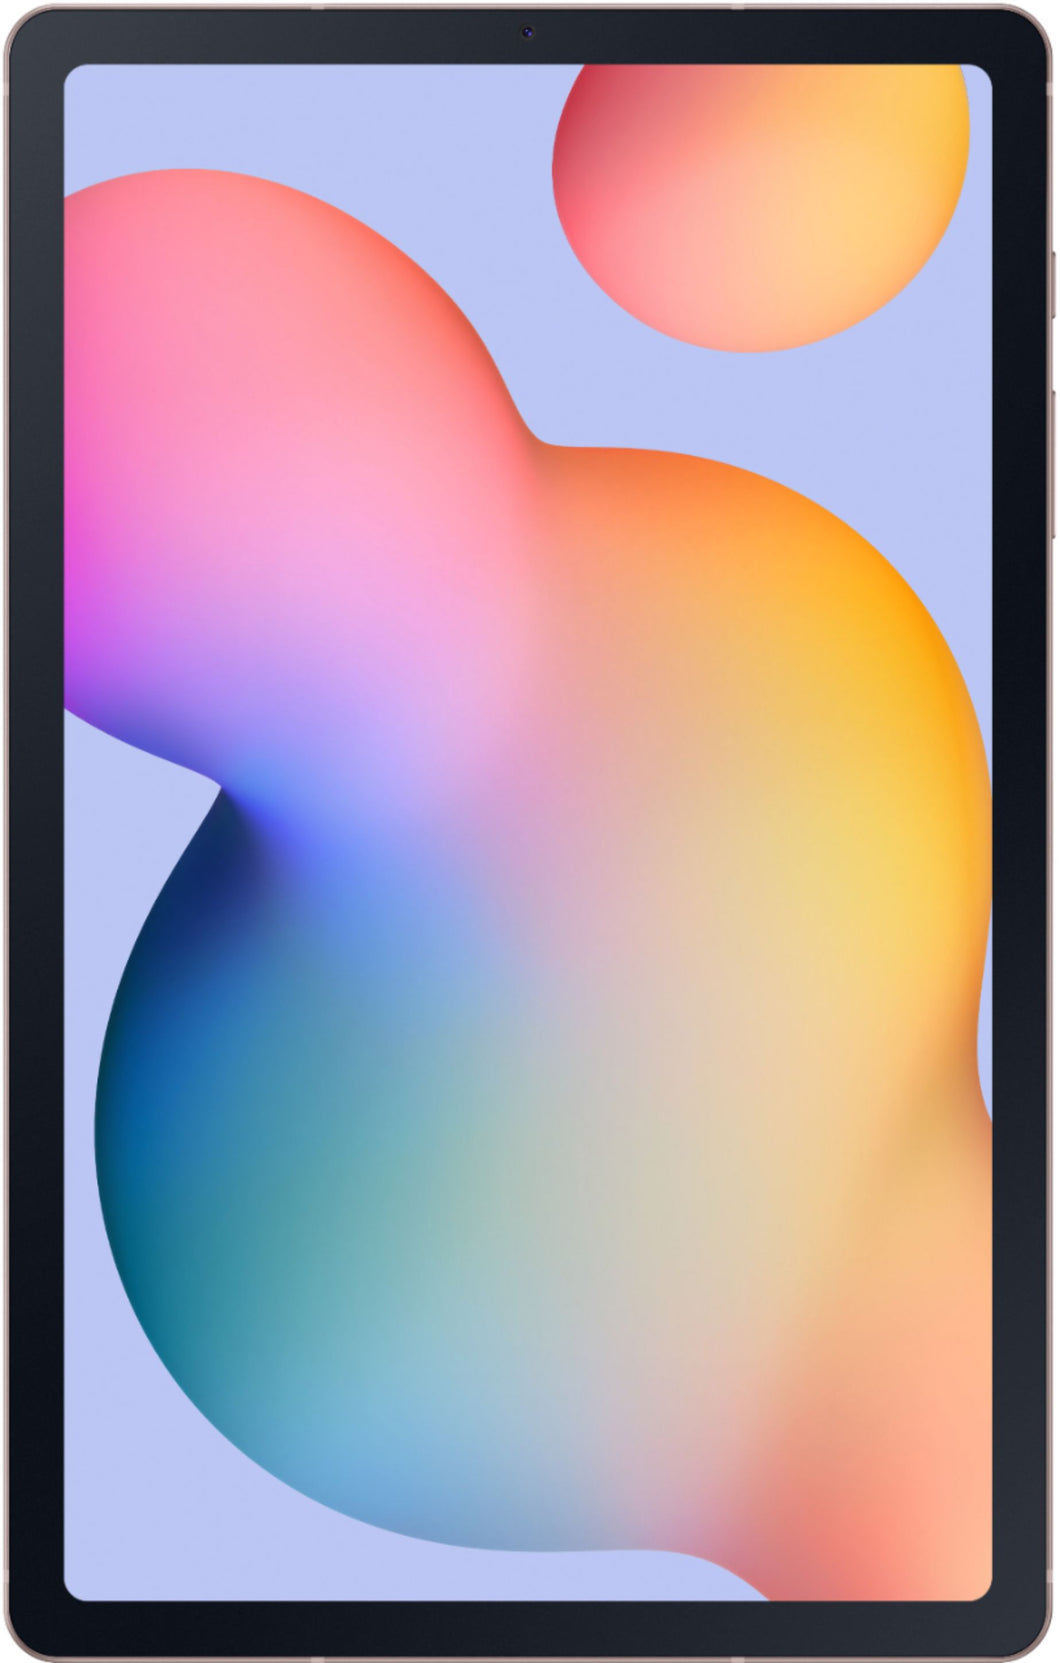 Galaxy Tab S6 Lite (2020) 64GB - Pink - (Wi-Fi)